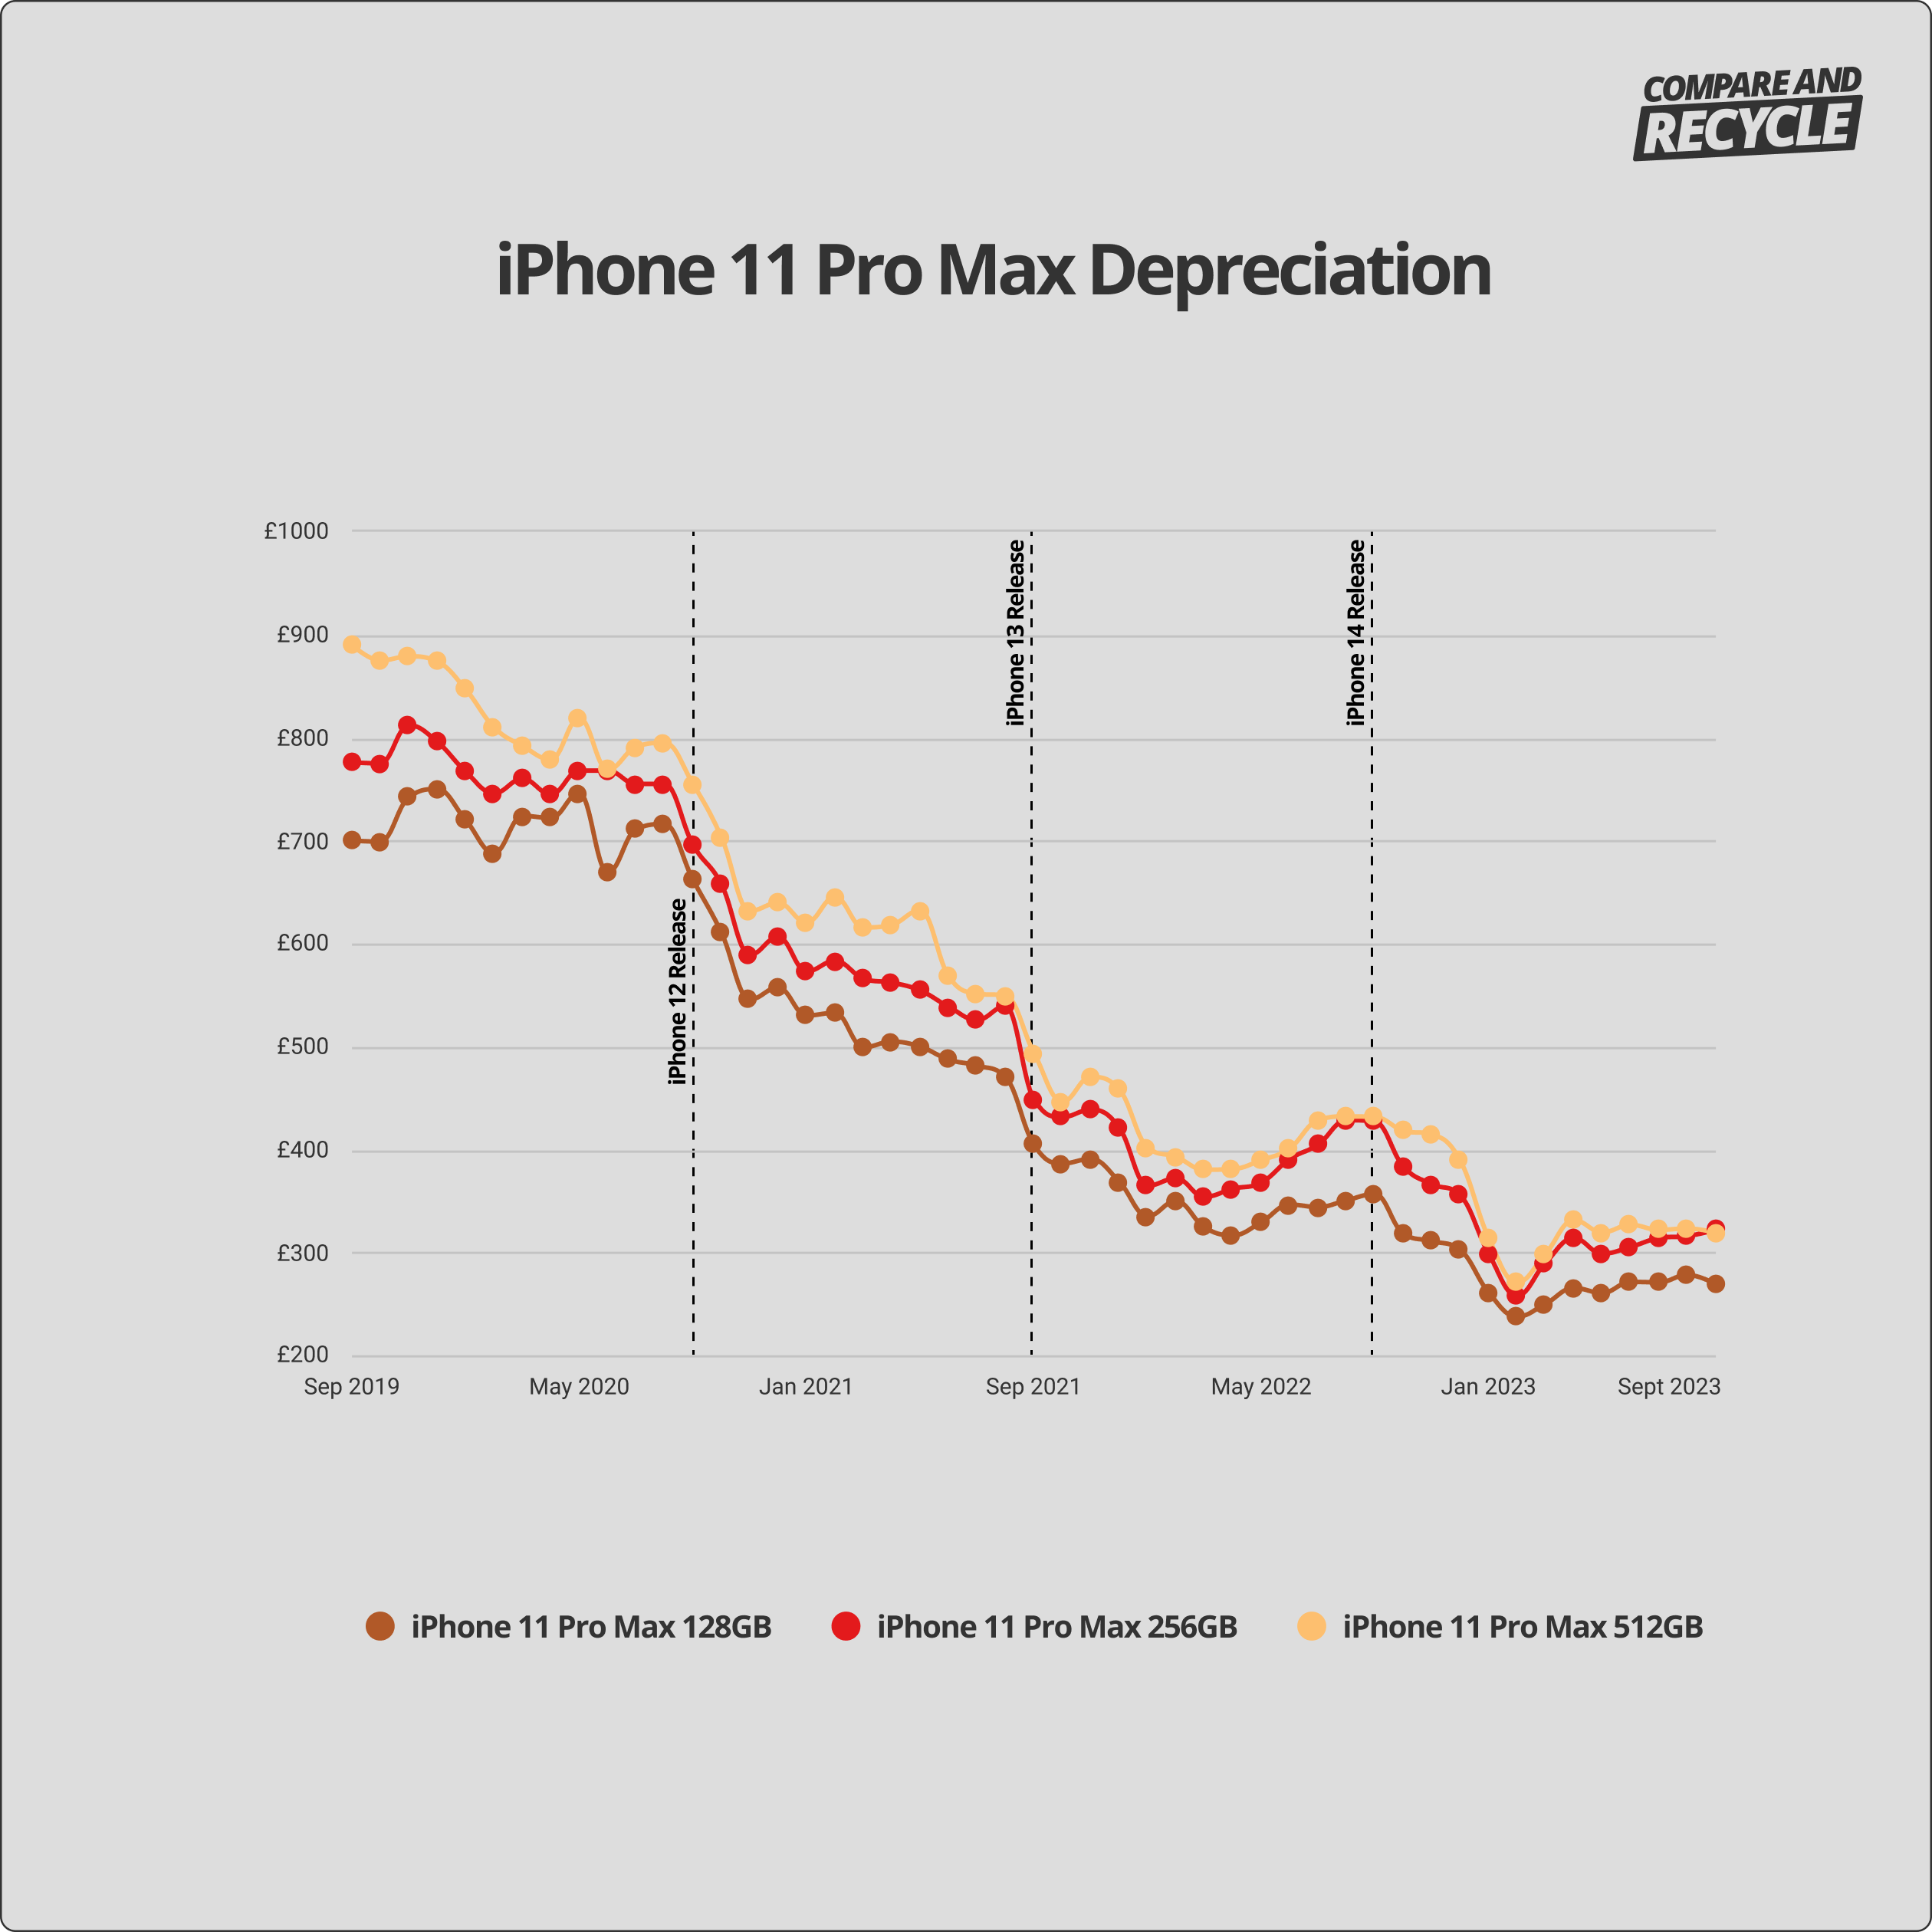 iPhone 11 Pro Max depreciation graph